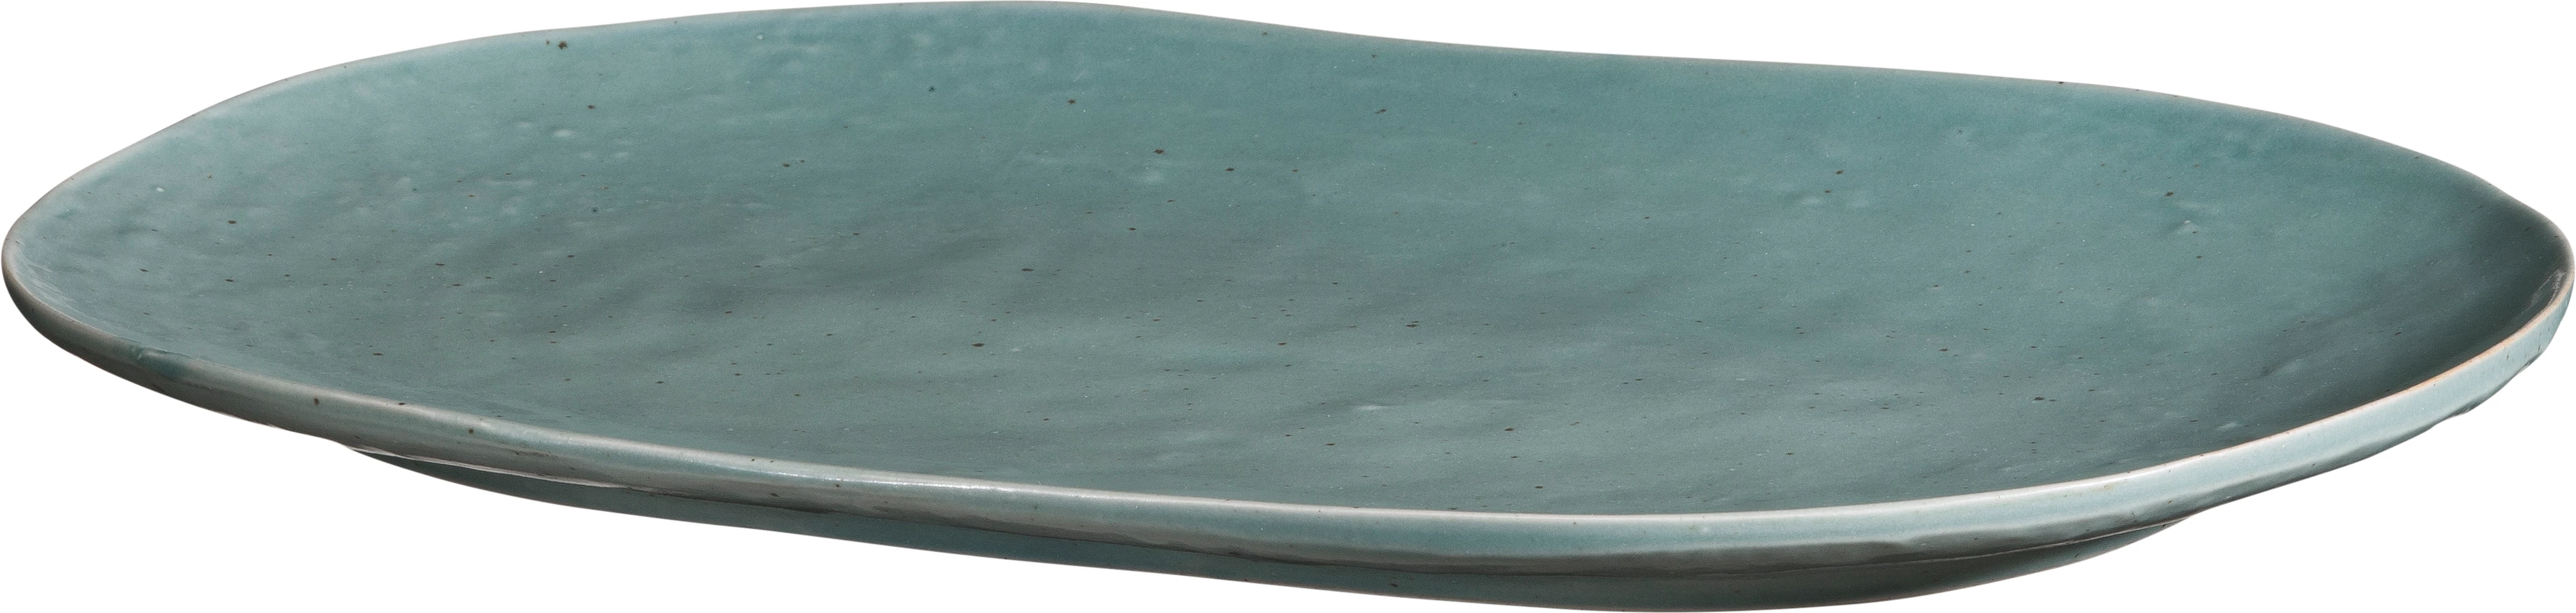 Leafs tallerken, oval, grøn, 35 x 23,5 cm